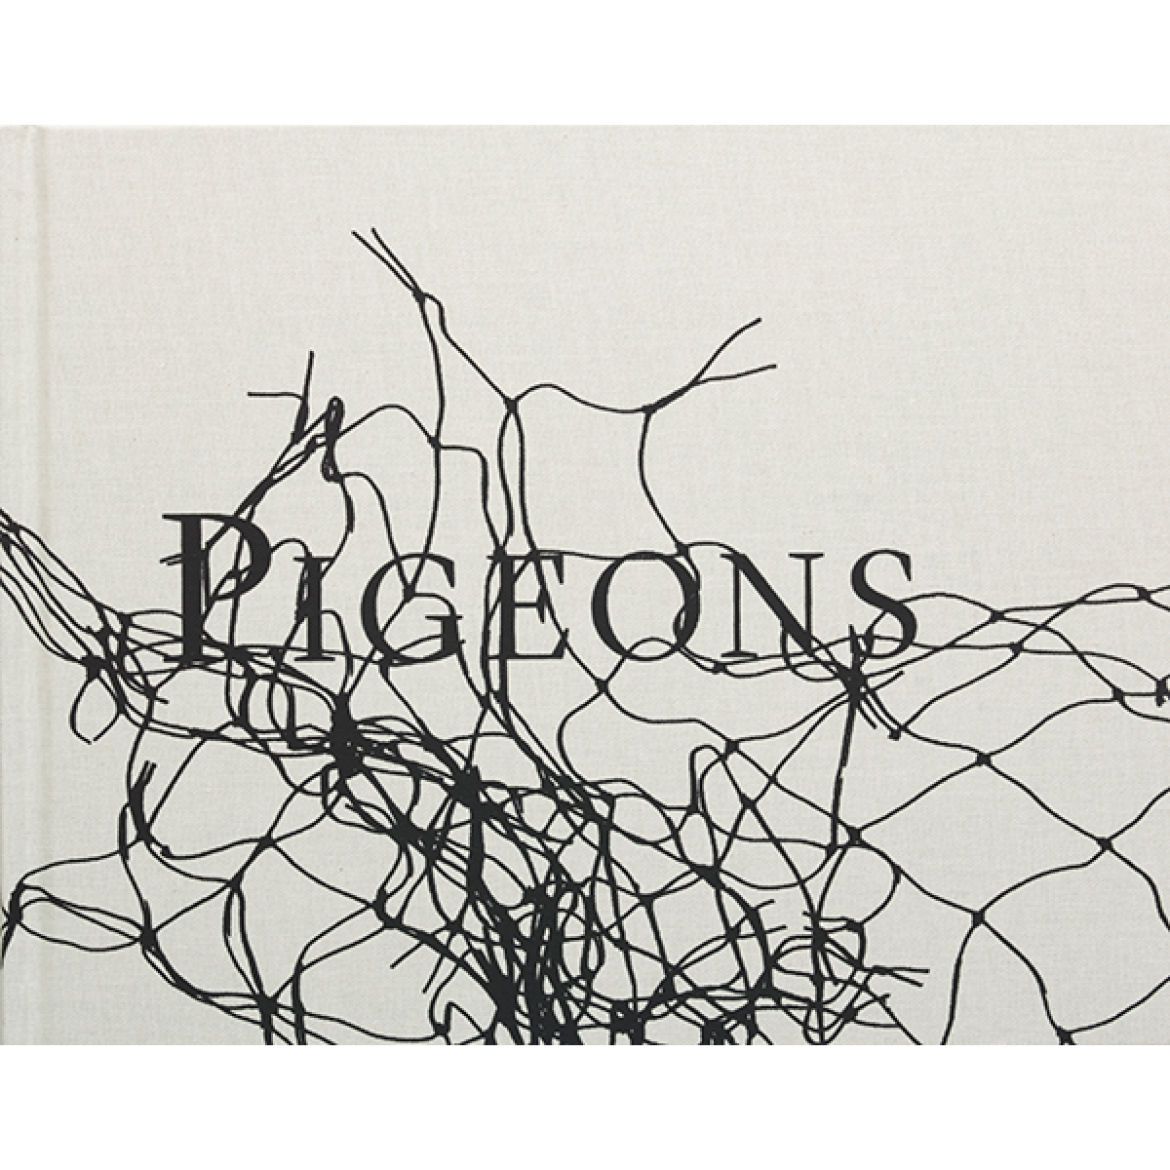 Stephen Gill "Pigeons", dzięki uprzejmości AMC Books